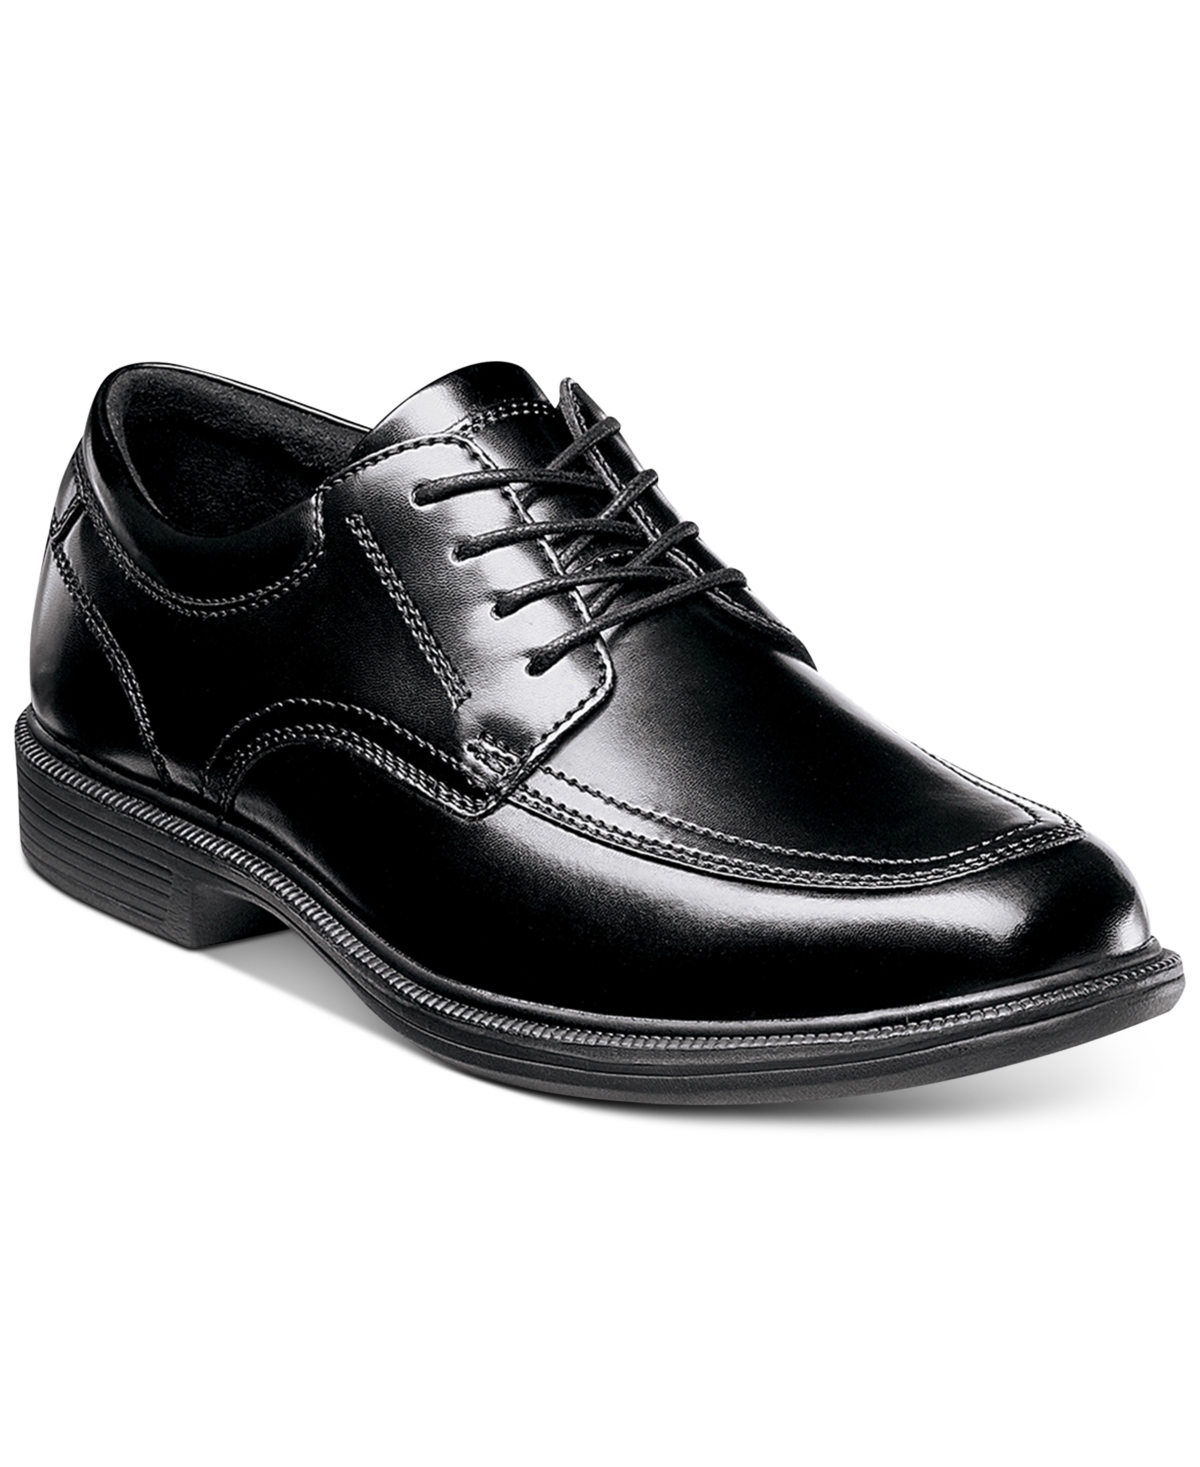 Men's Bourbon Street Dress Casual Shoes - Black